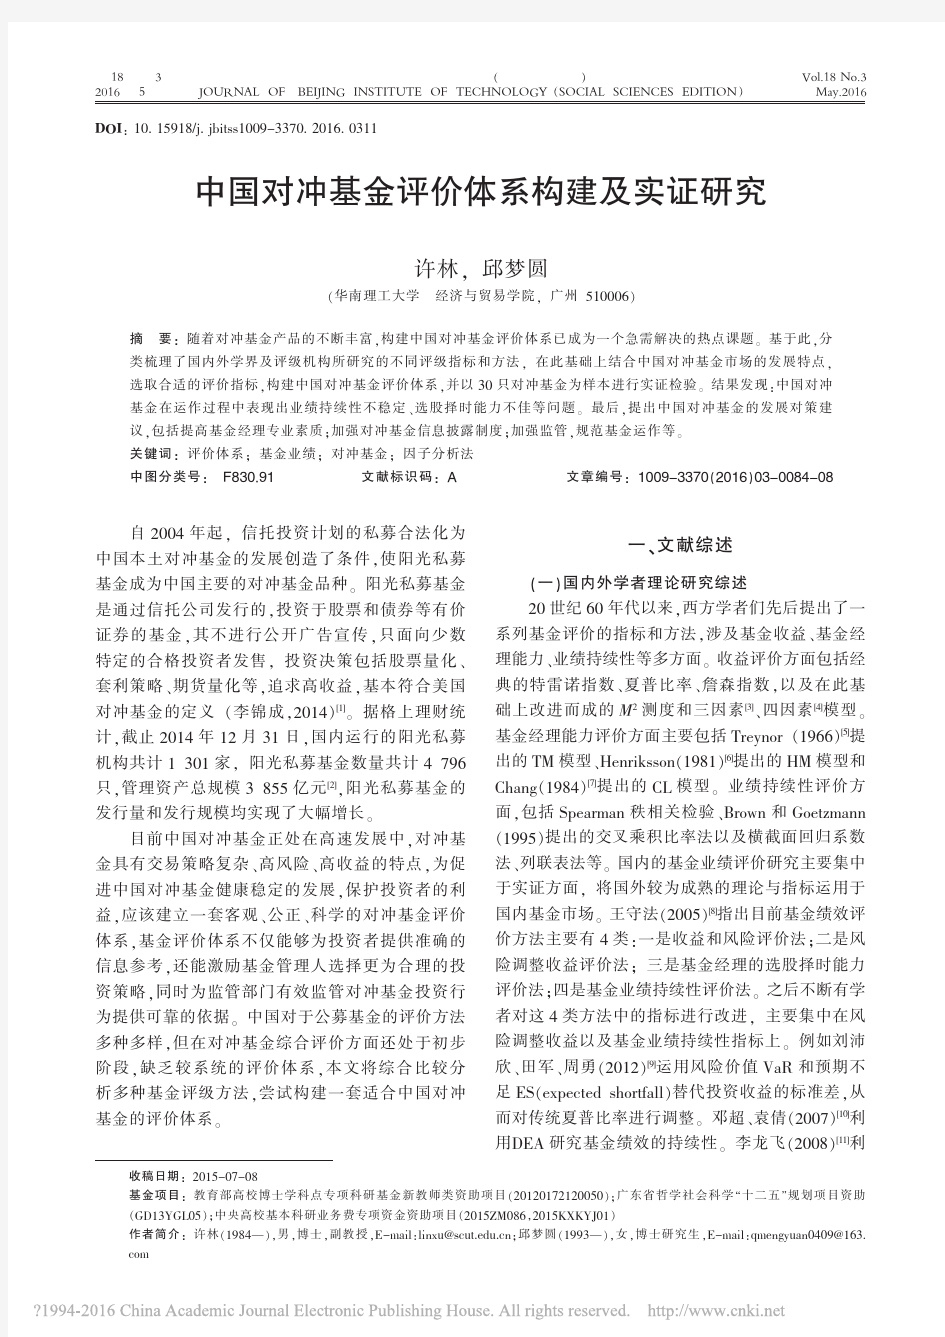 中国对冲基金评价体系构建及实证研究_许林